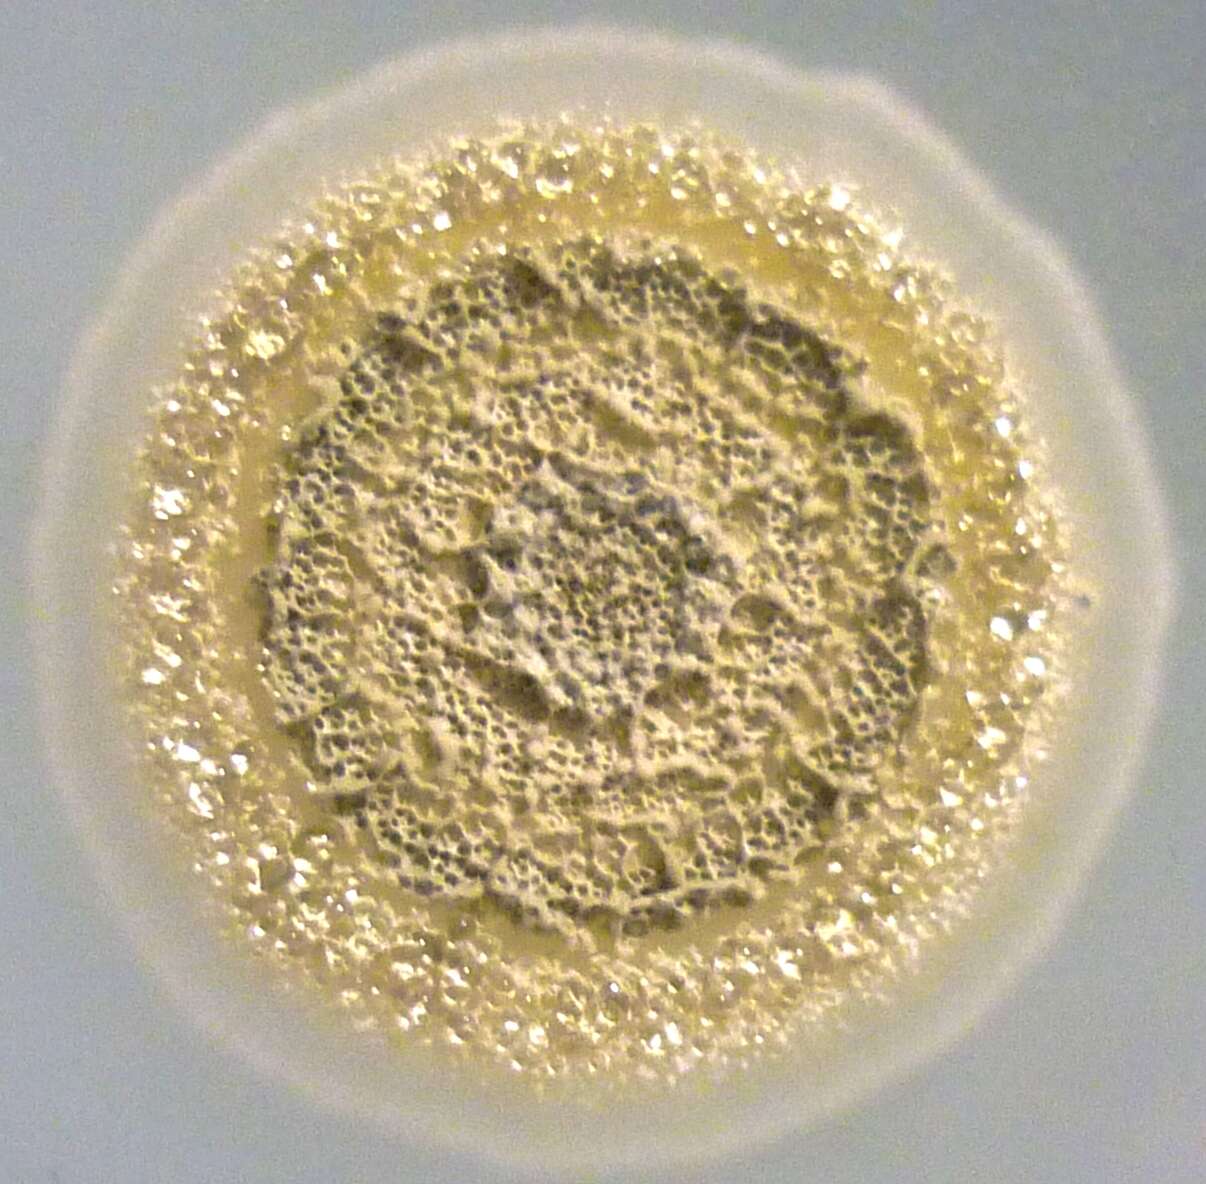 Streptomycetales resmi